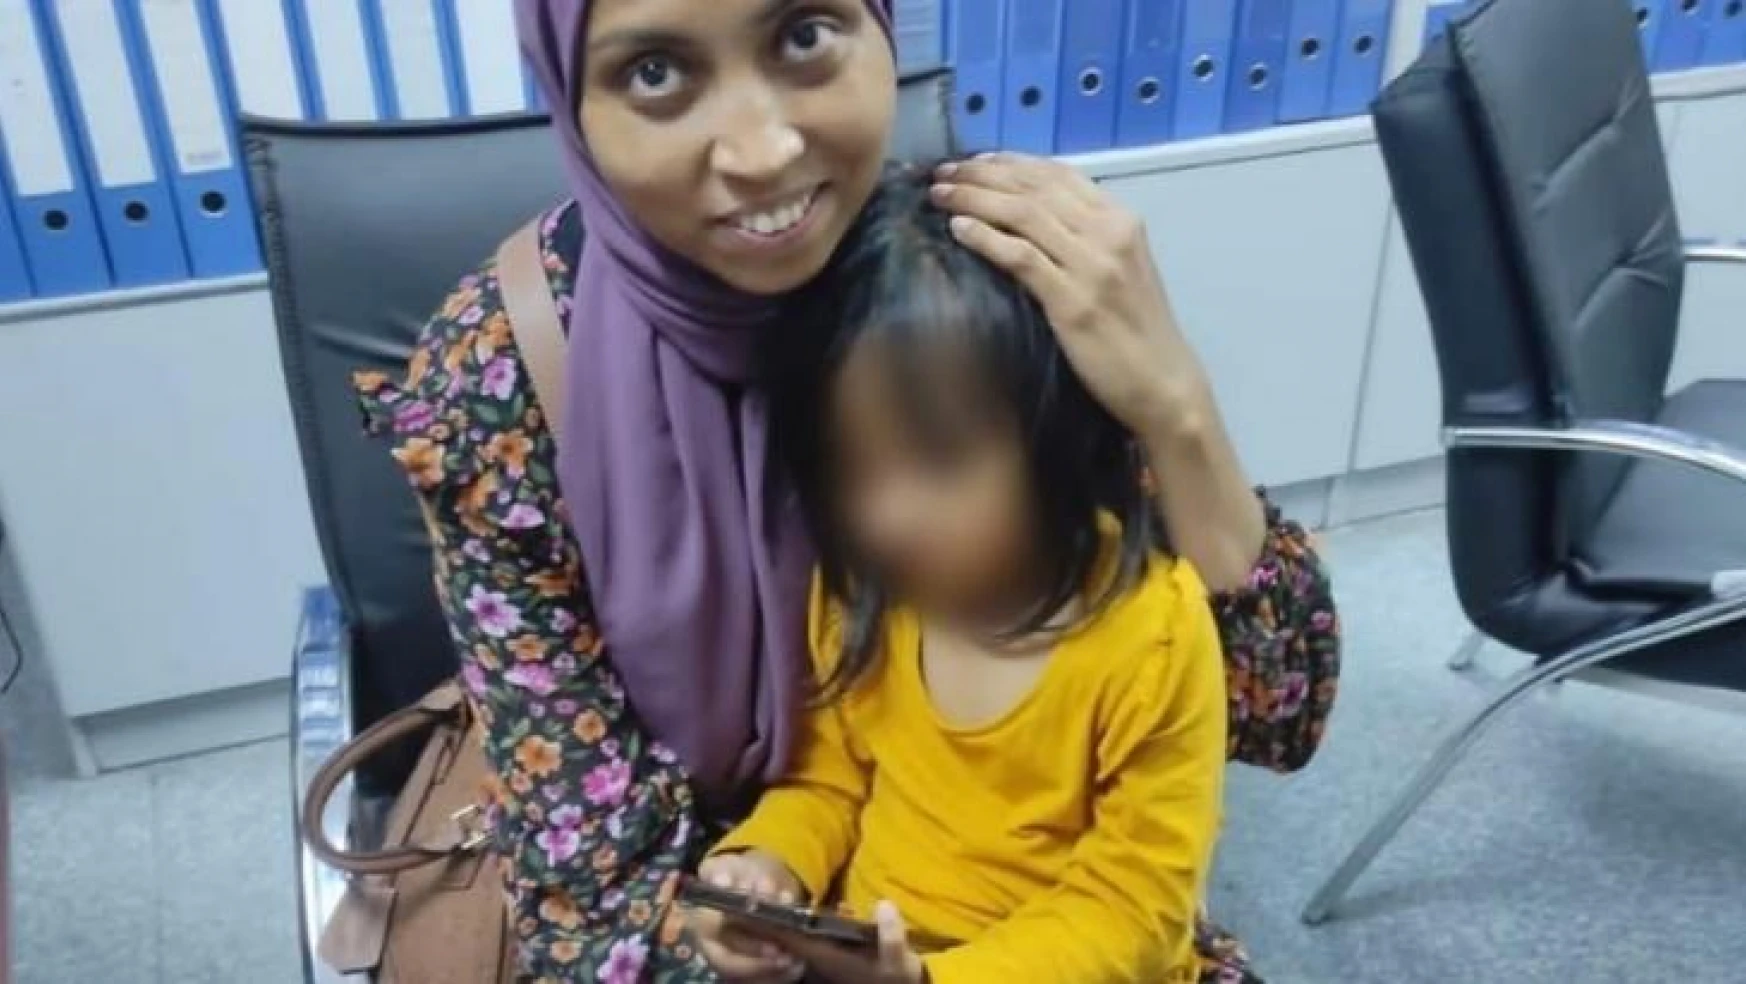 İHA sesini duyurdu, Bangladeşli kadın kaçırılan kızına kavuştu